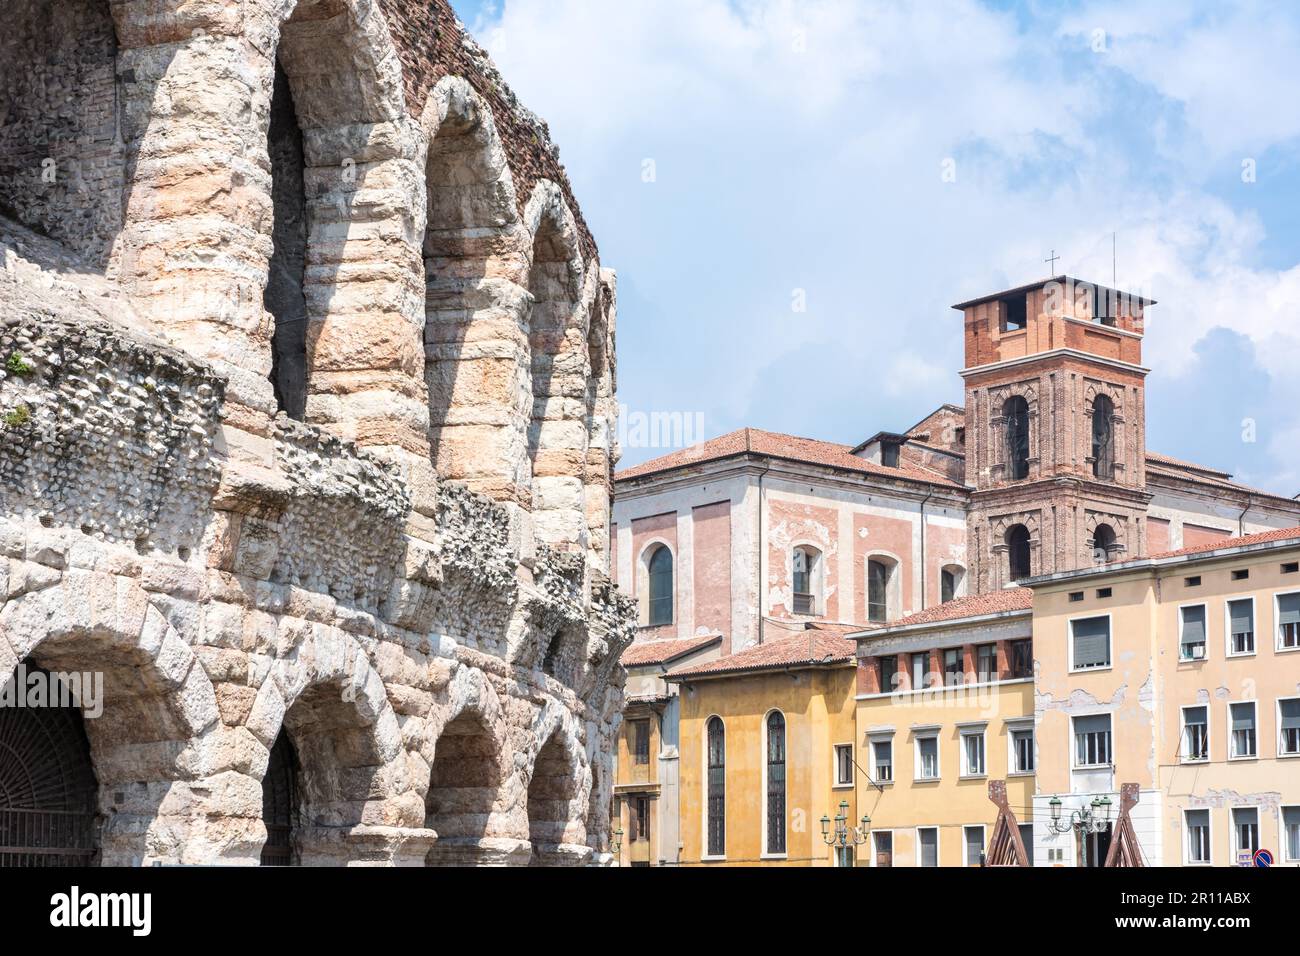 Das antike römische Amphitheater von Verona Italien, Verona, Venetien, Italien Stockfoto